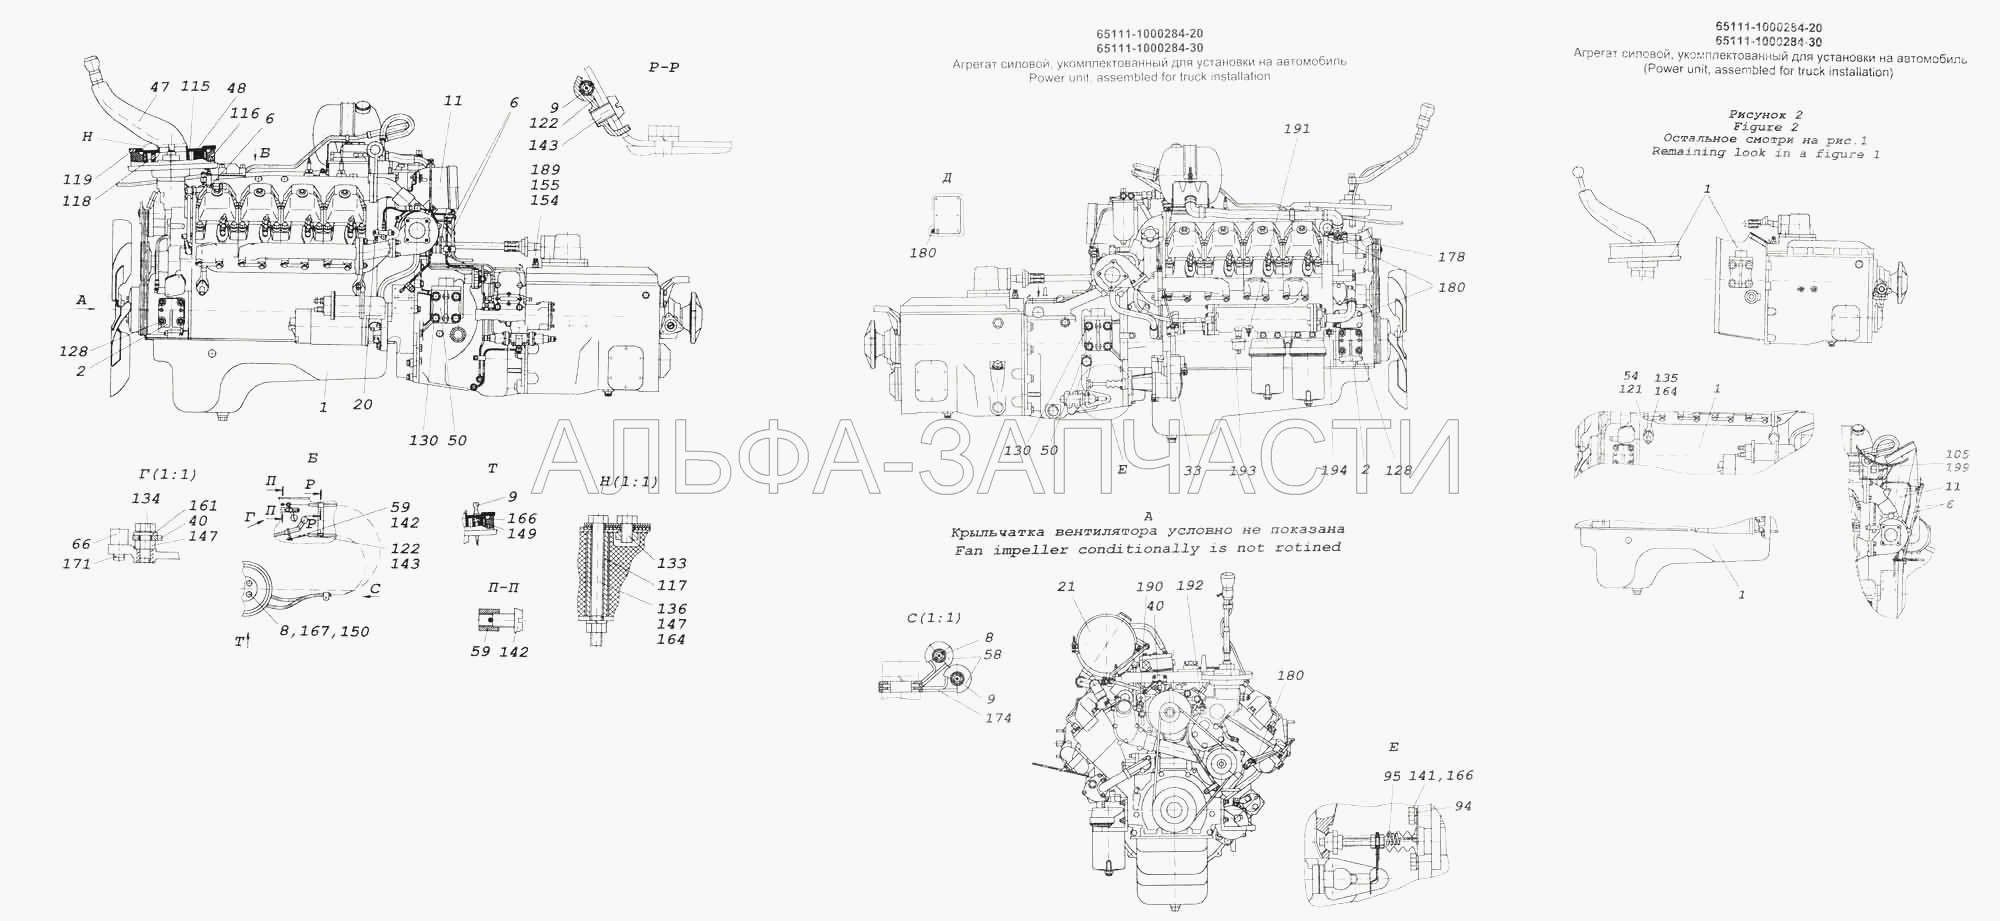 Агрегат силовой, укомплектованный для установки на автомобиль (1/55407/21 Болт М12х1,25-6gх45) 